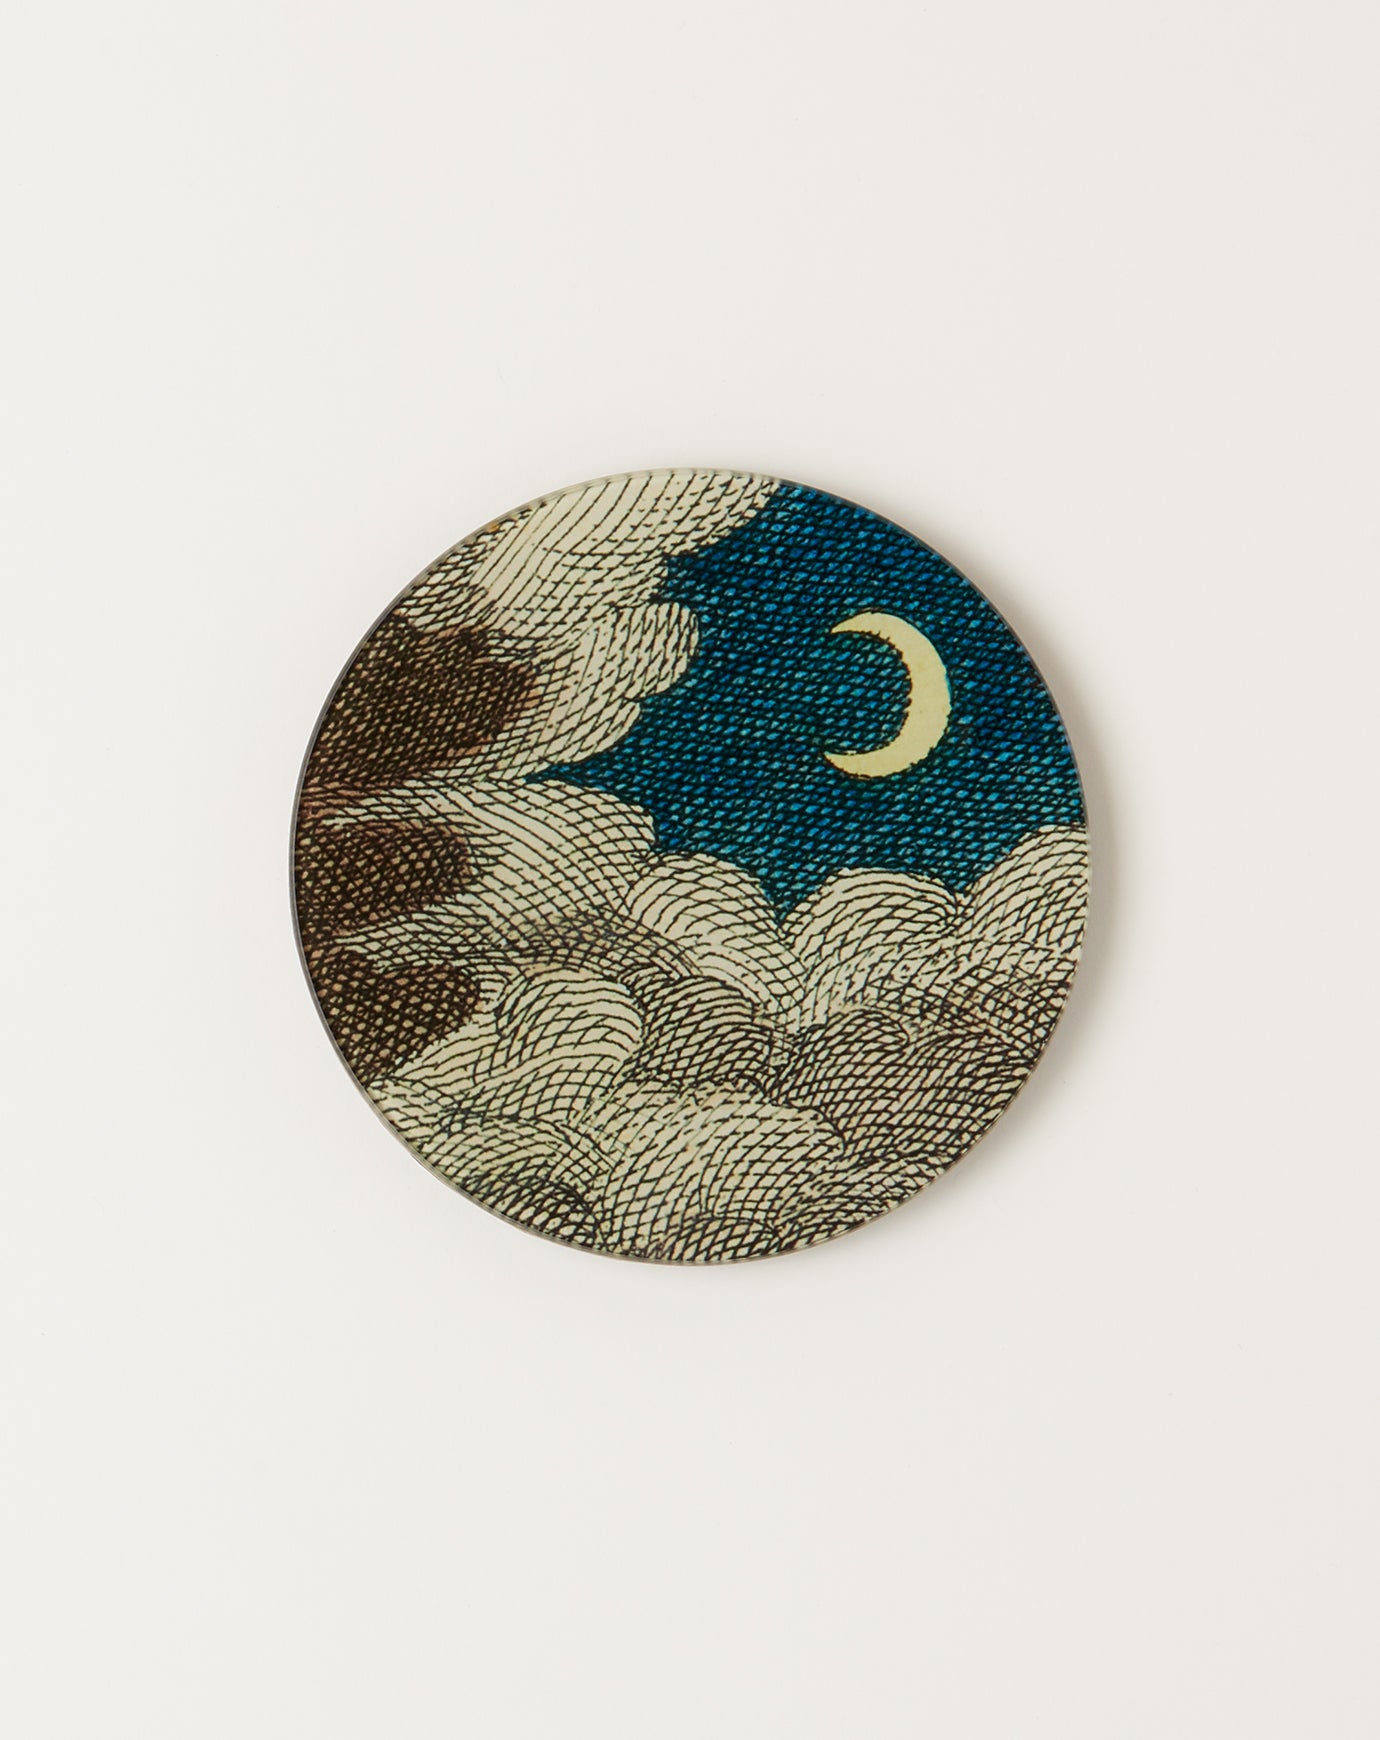 John Derian Clouds & Crescent Moon 5 3/4" Round